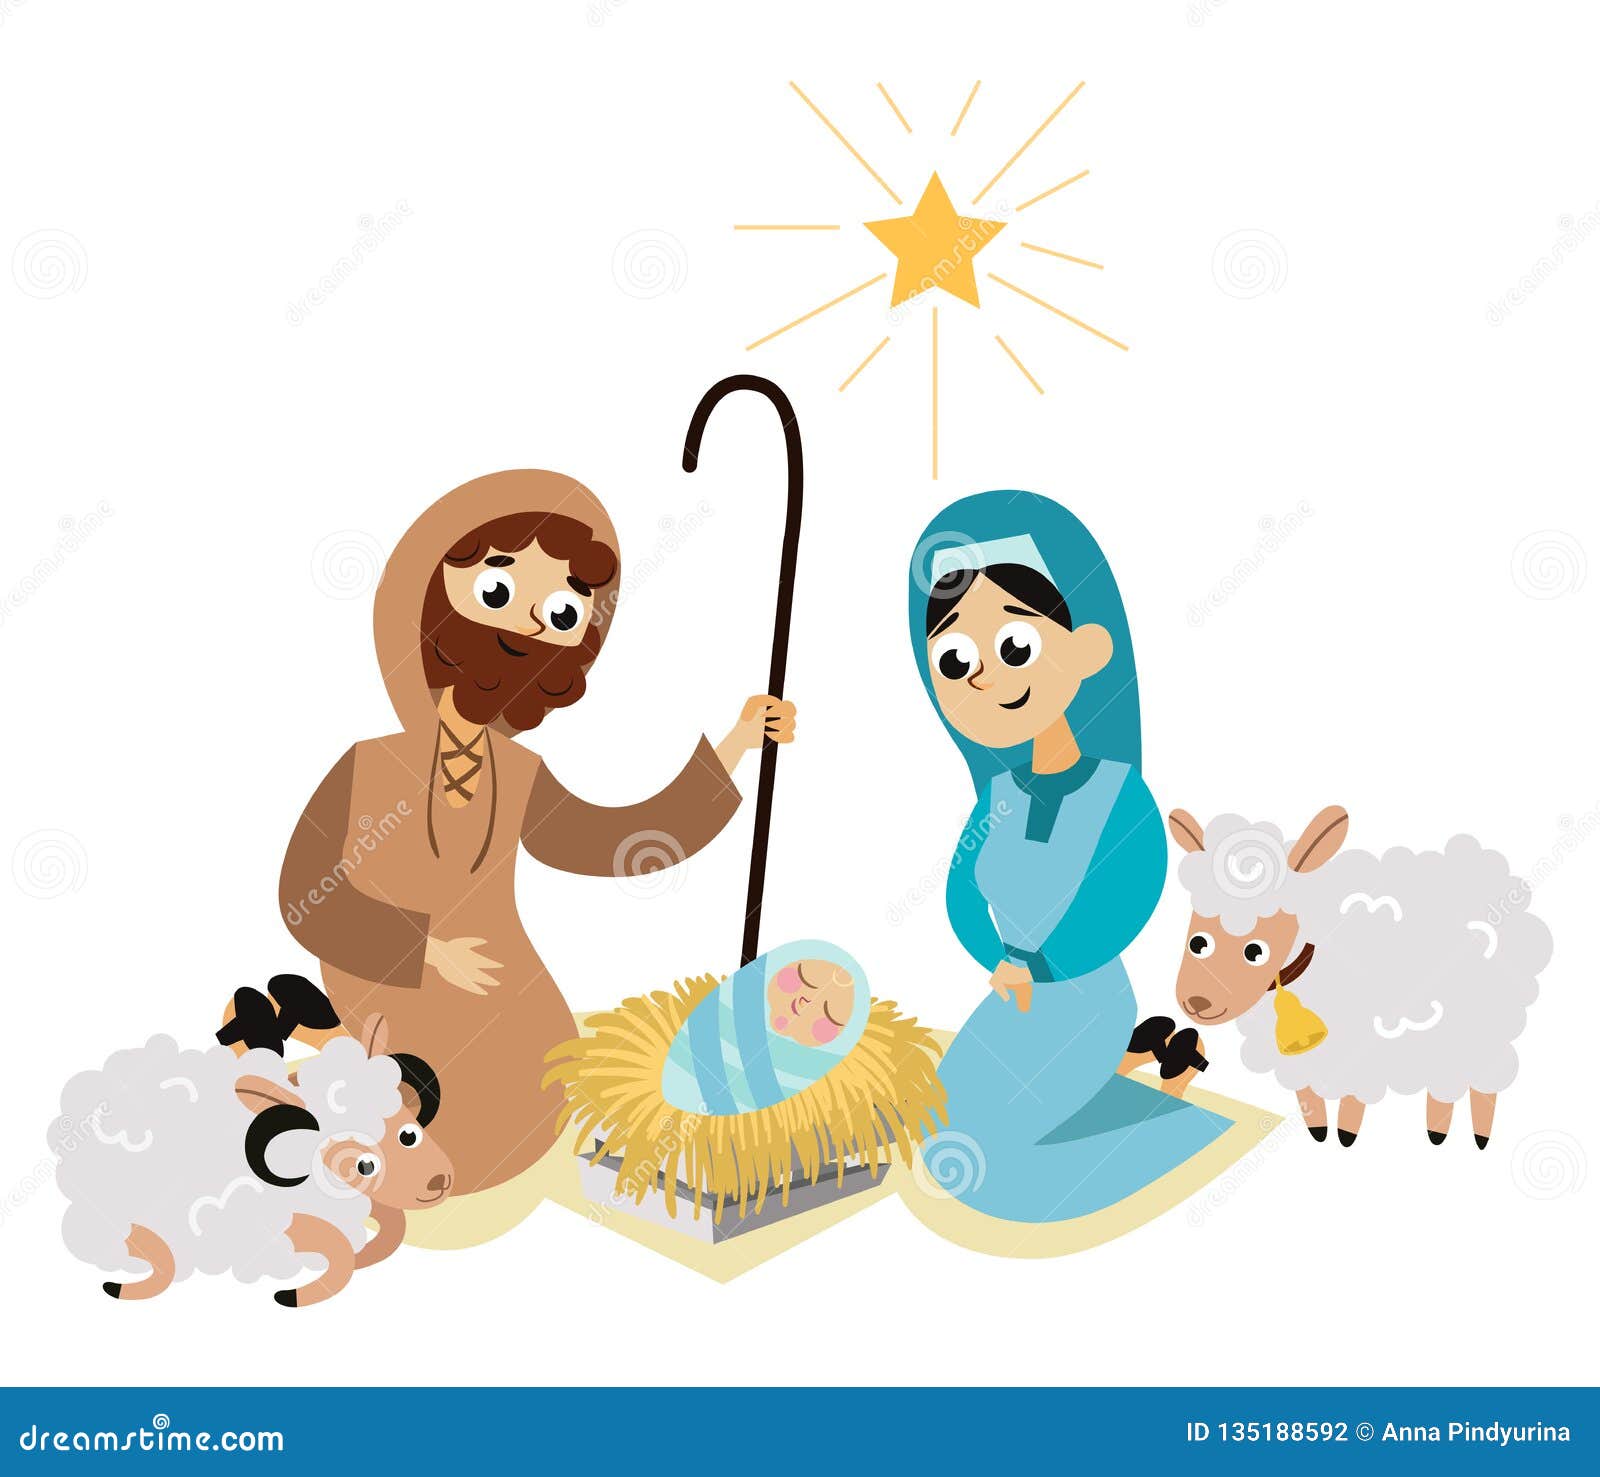 Baby Jesus Born in Bethlehem Scene in Holy Family Stock Vector ...